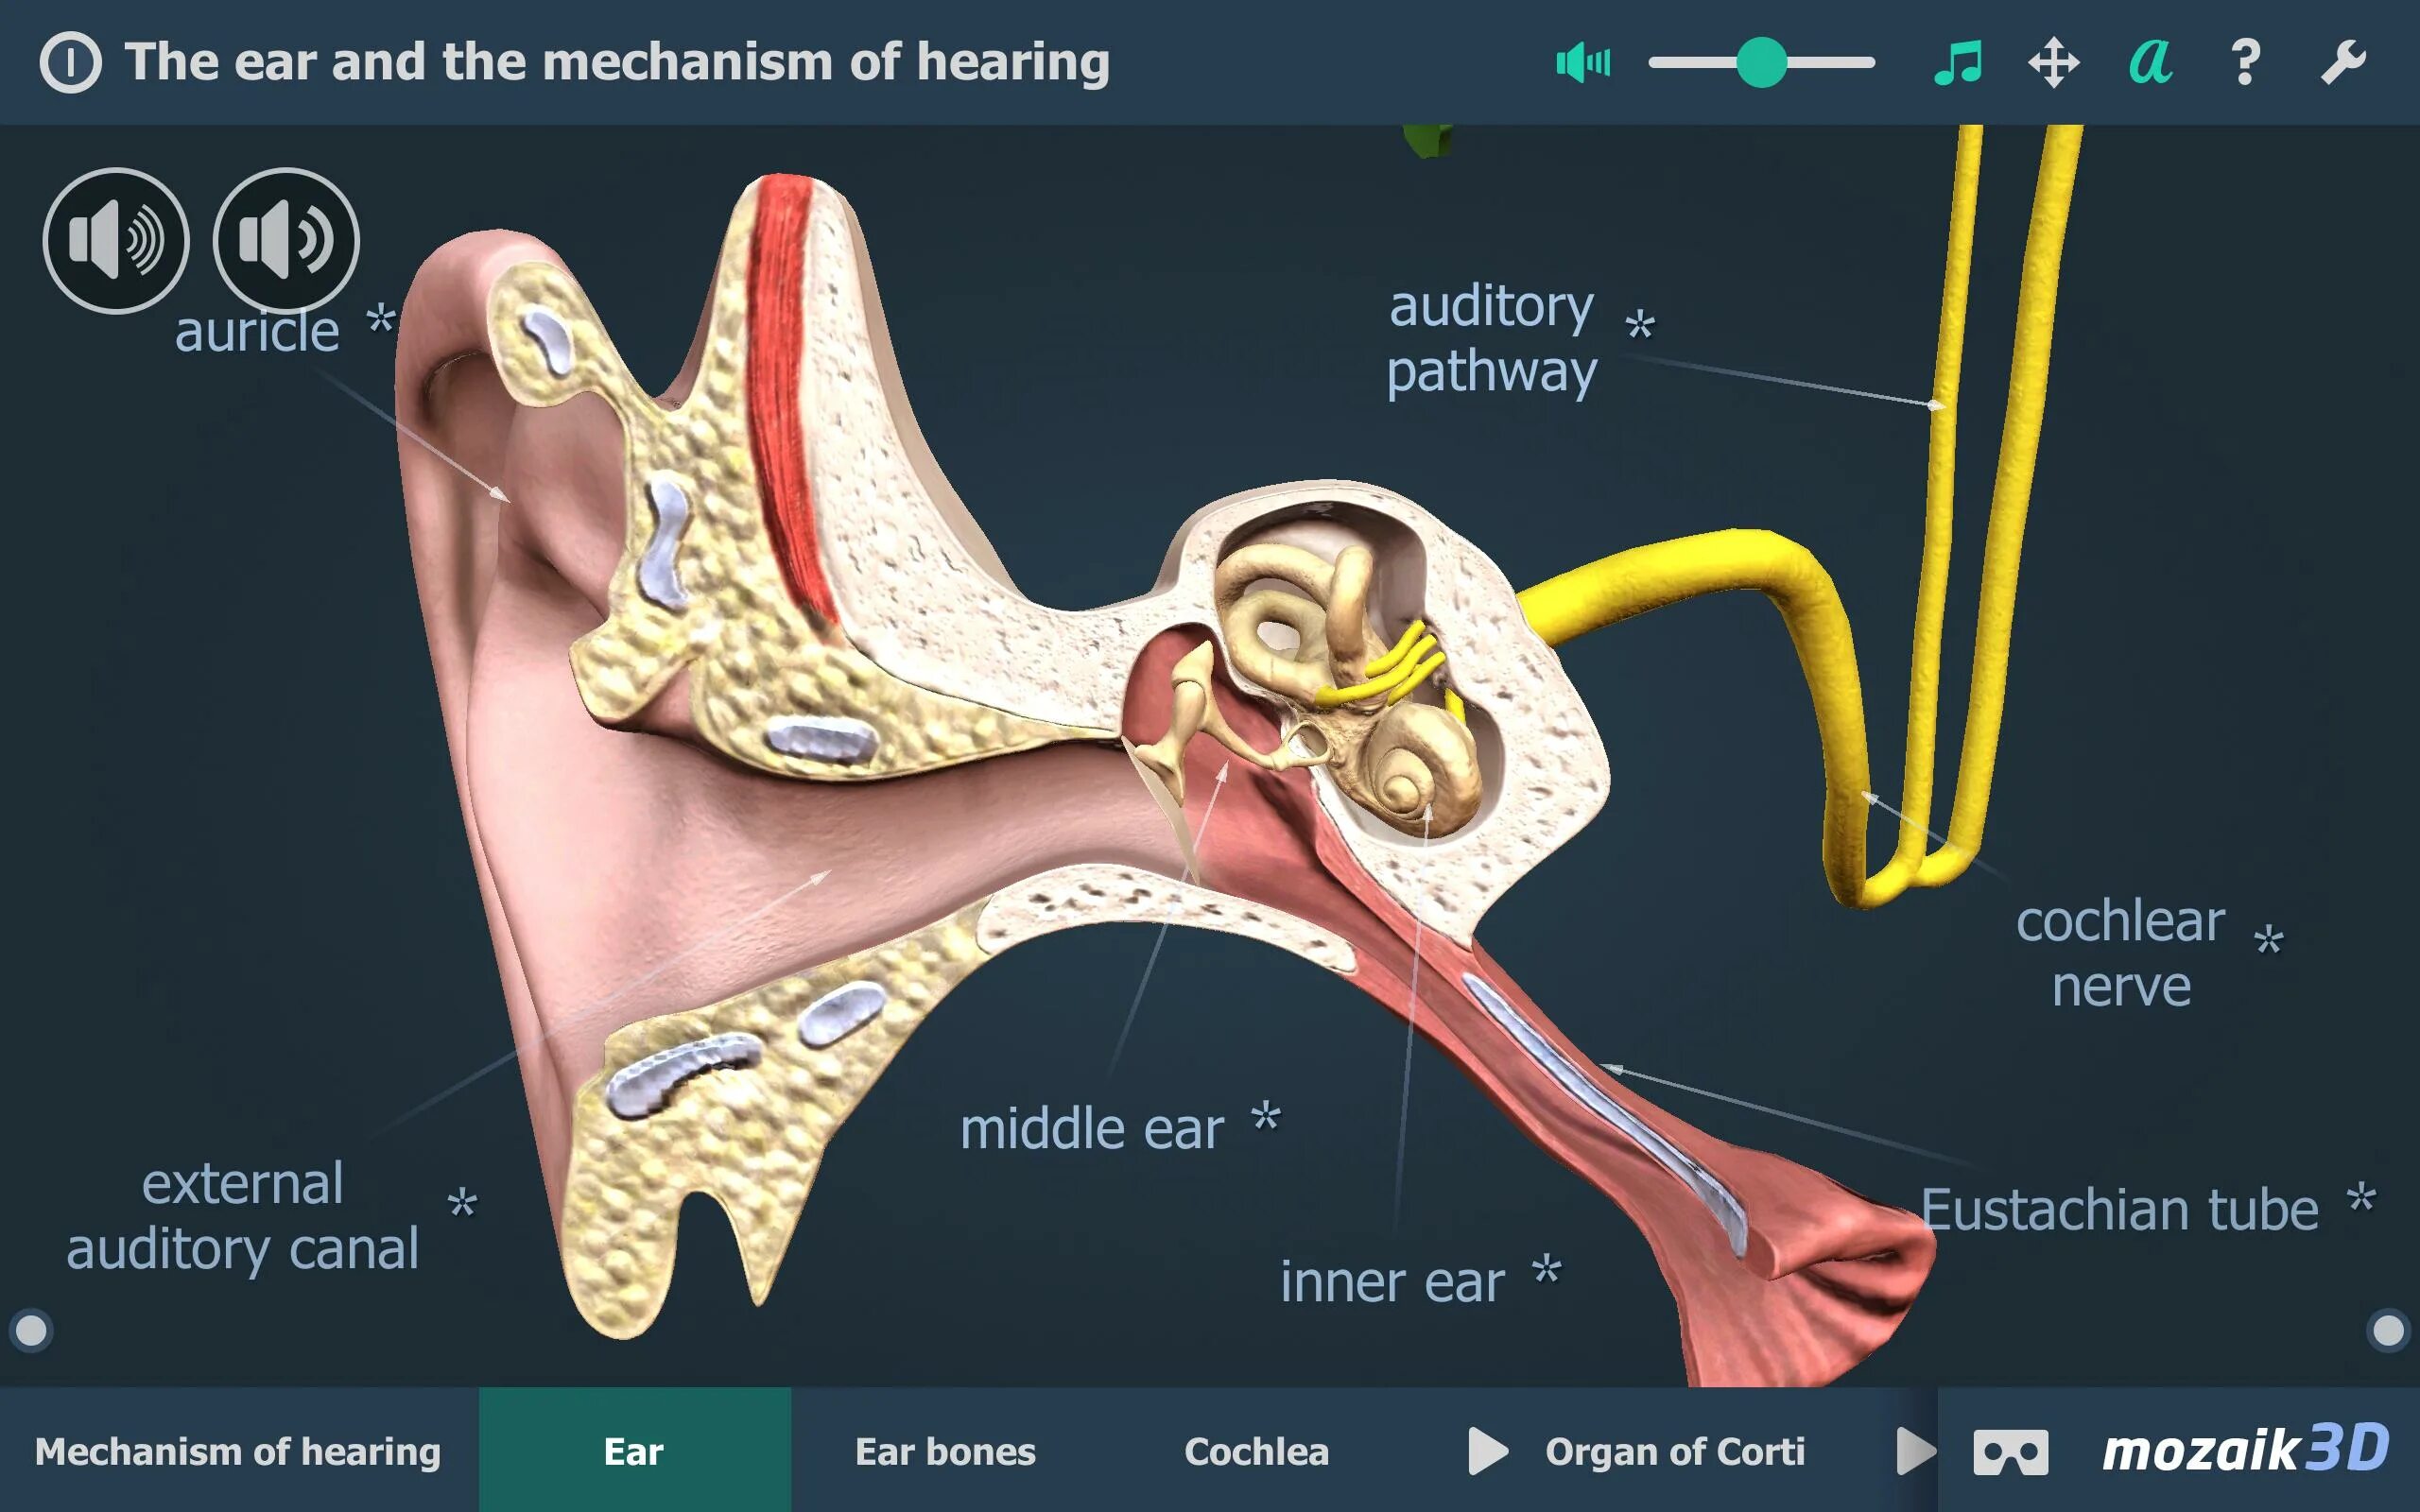 Mozaik 3d ухо. Слуховой процесс в 3d. Евстахиева труба соединяет полость среднего уха с носоглоткой. Hear 3.